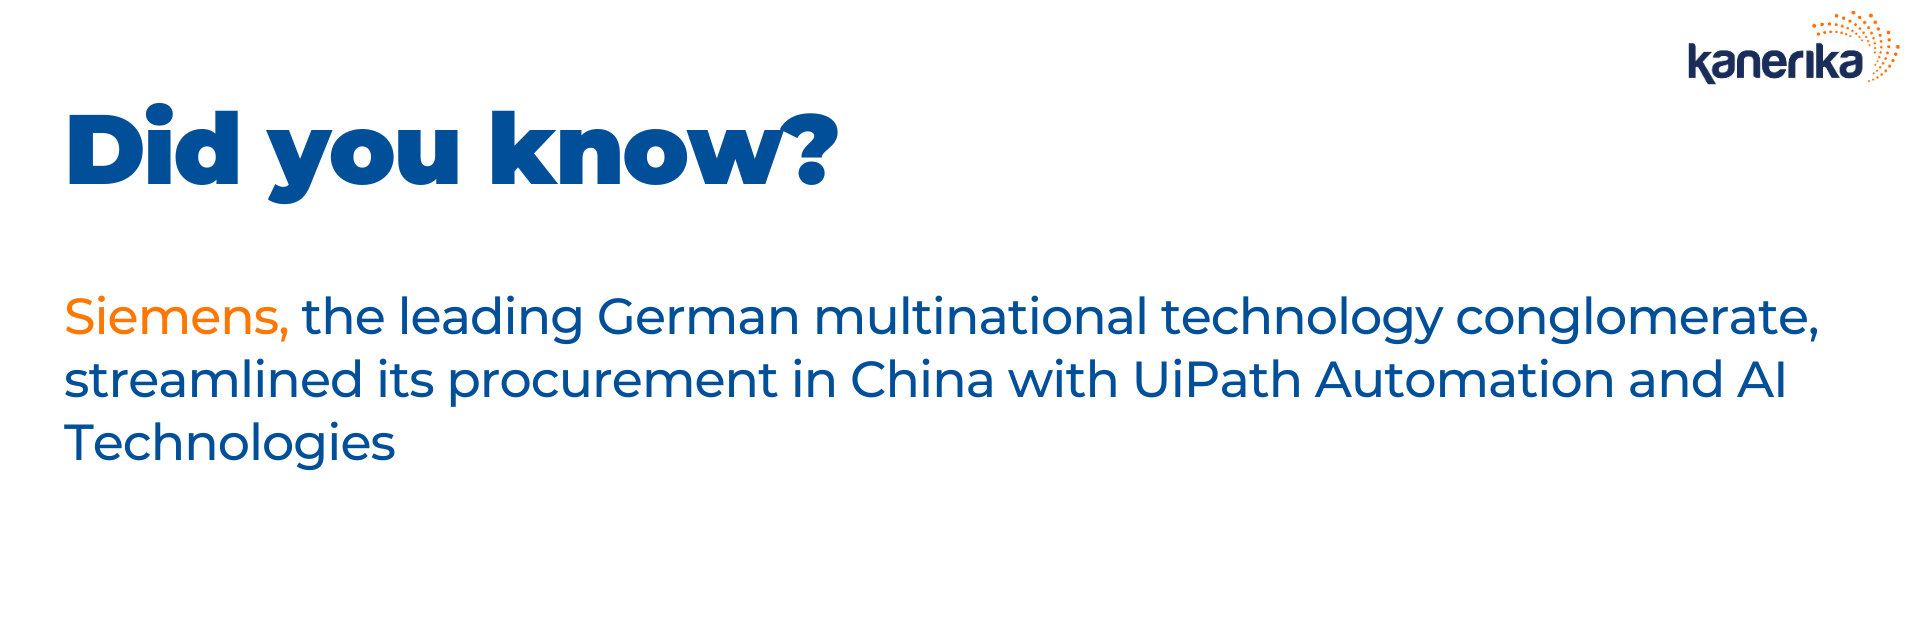 UiPath enabling Siemens